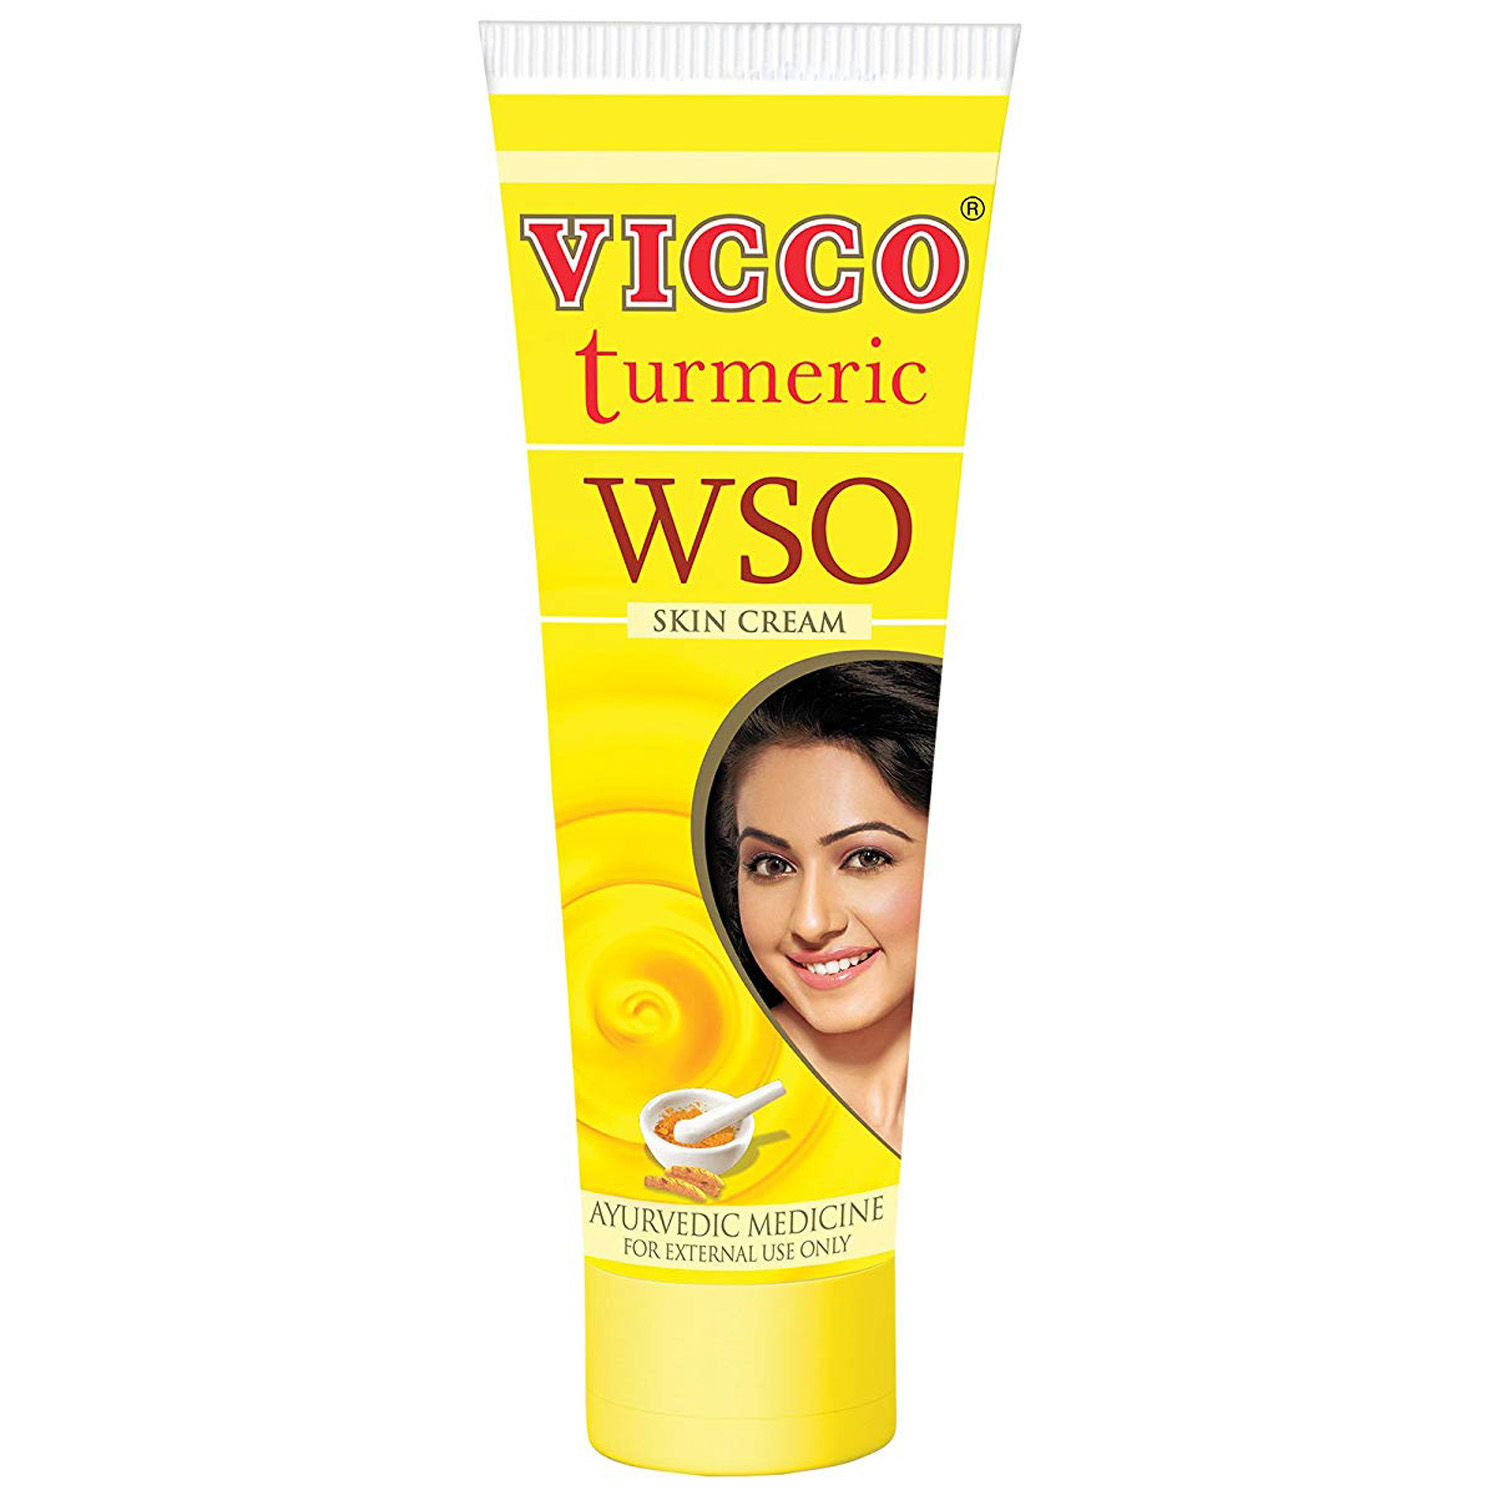 Vicco Turmeric Wso Skin Cream, 60 gm, Pack of 1 